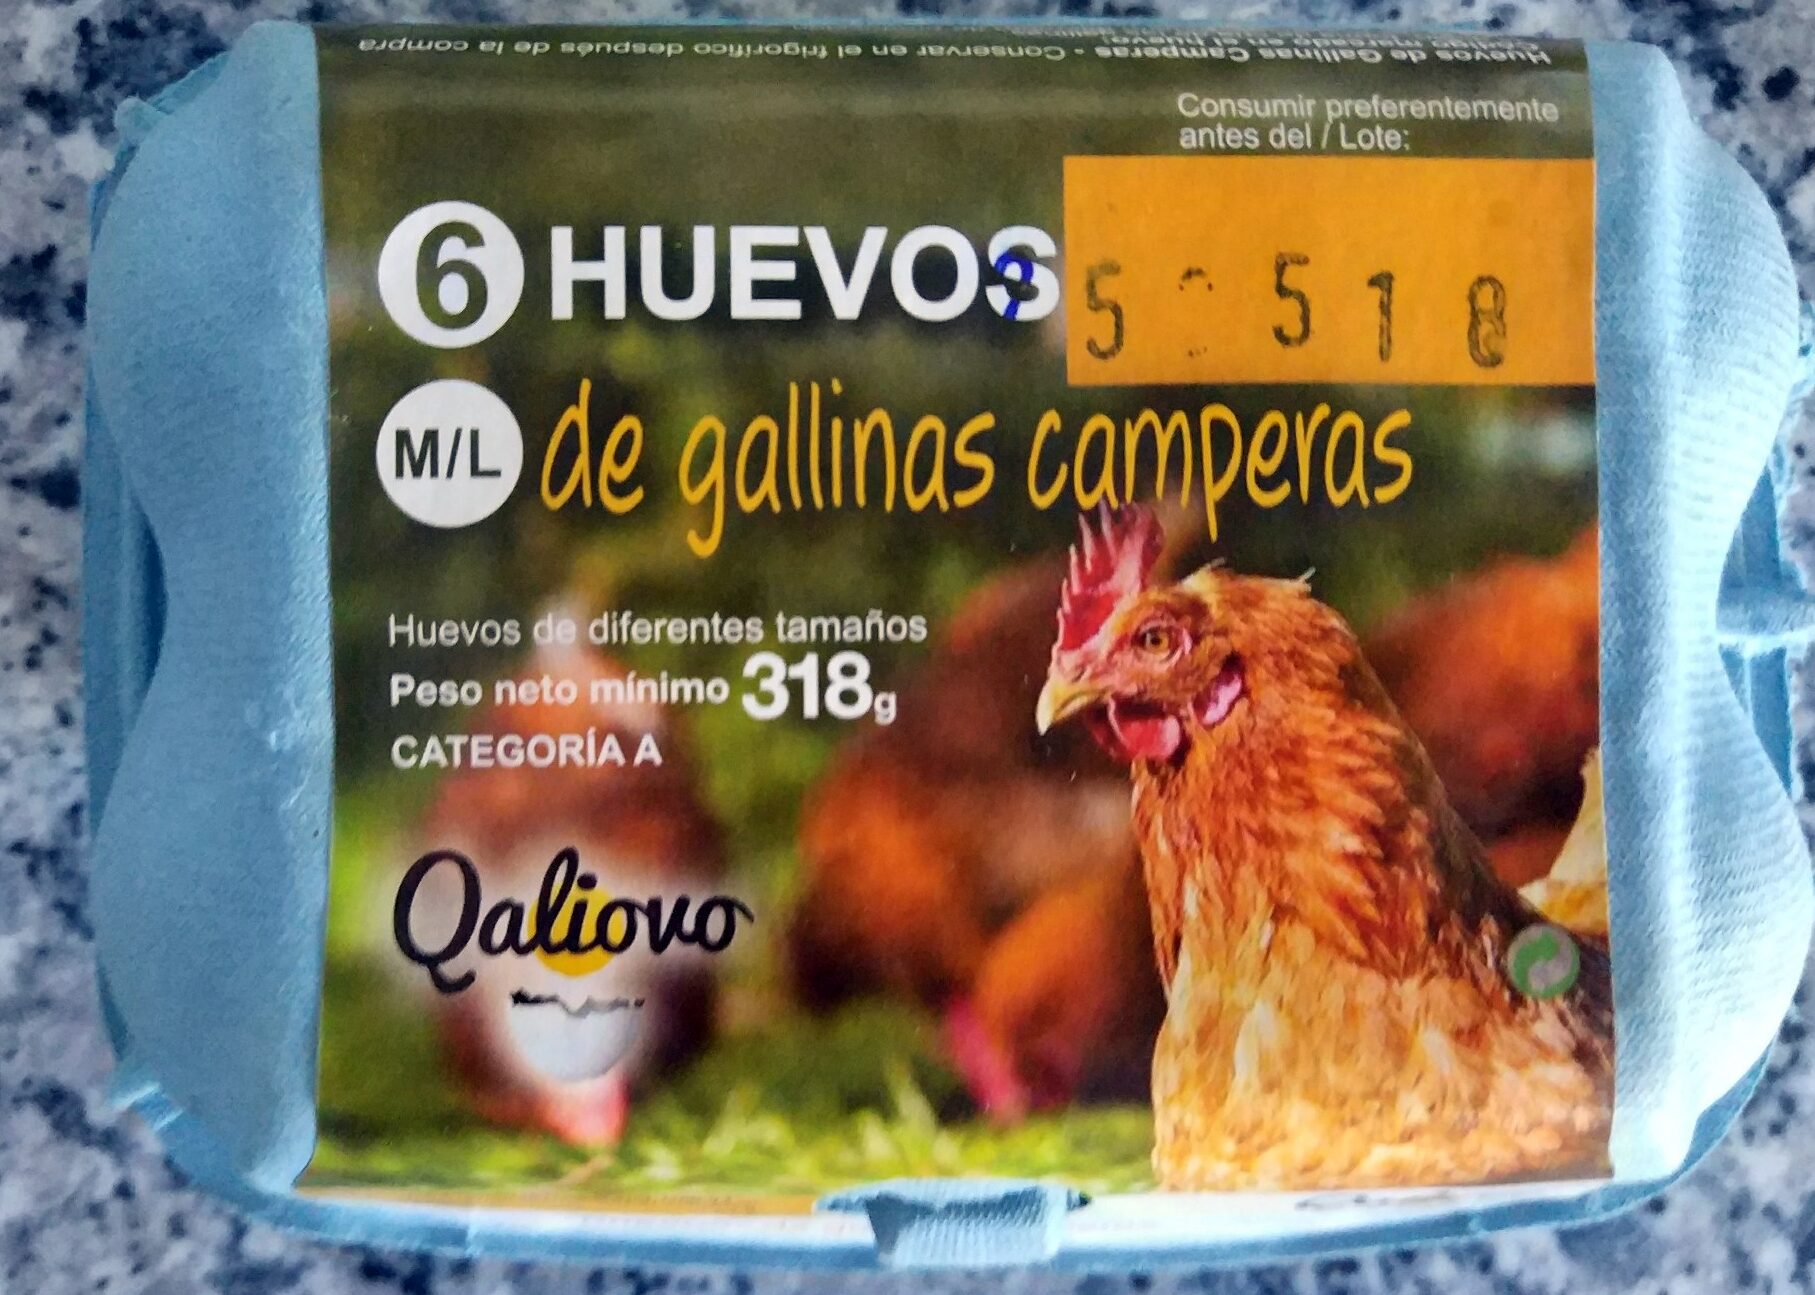 Huevos de gallinas camperas - Produkt - es